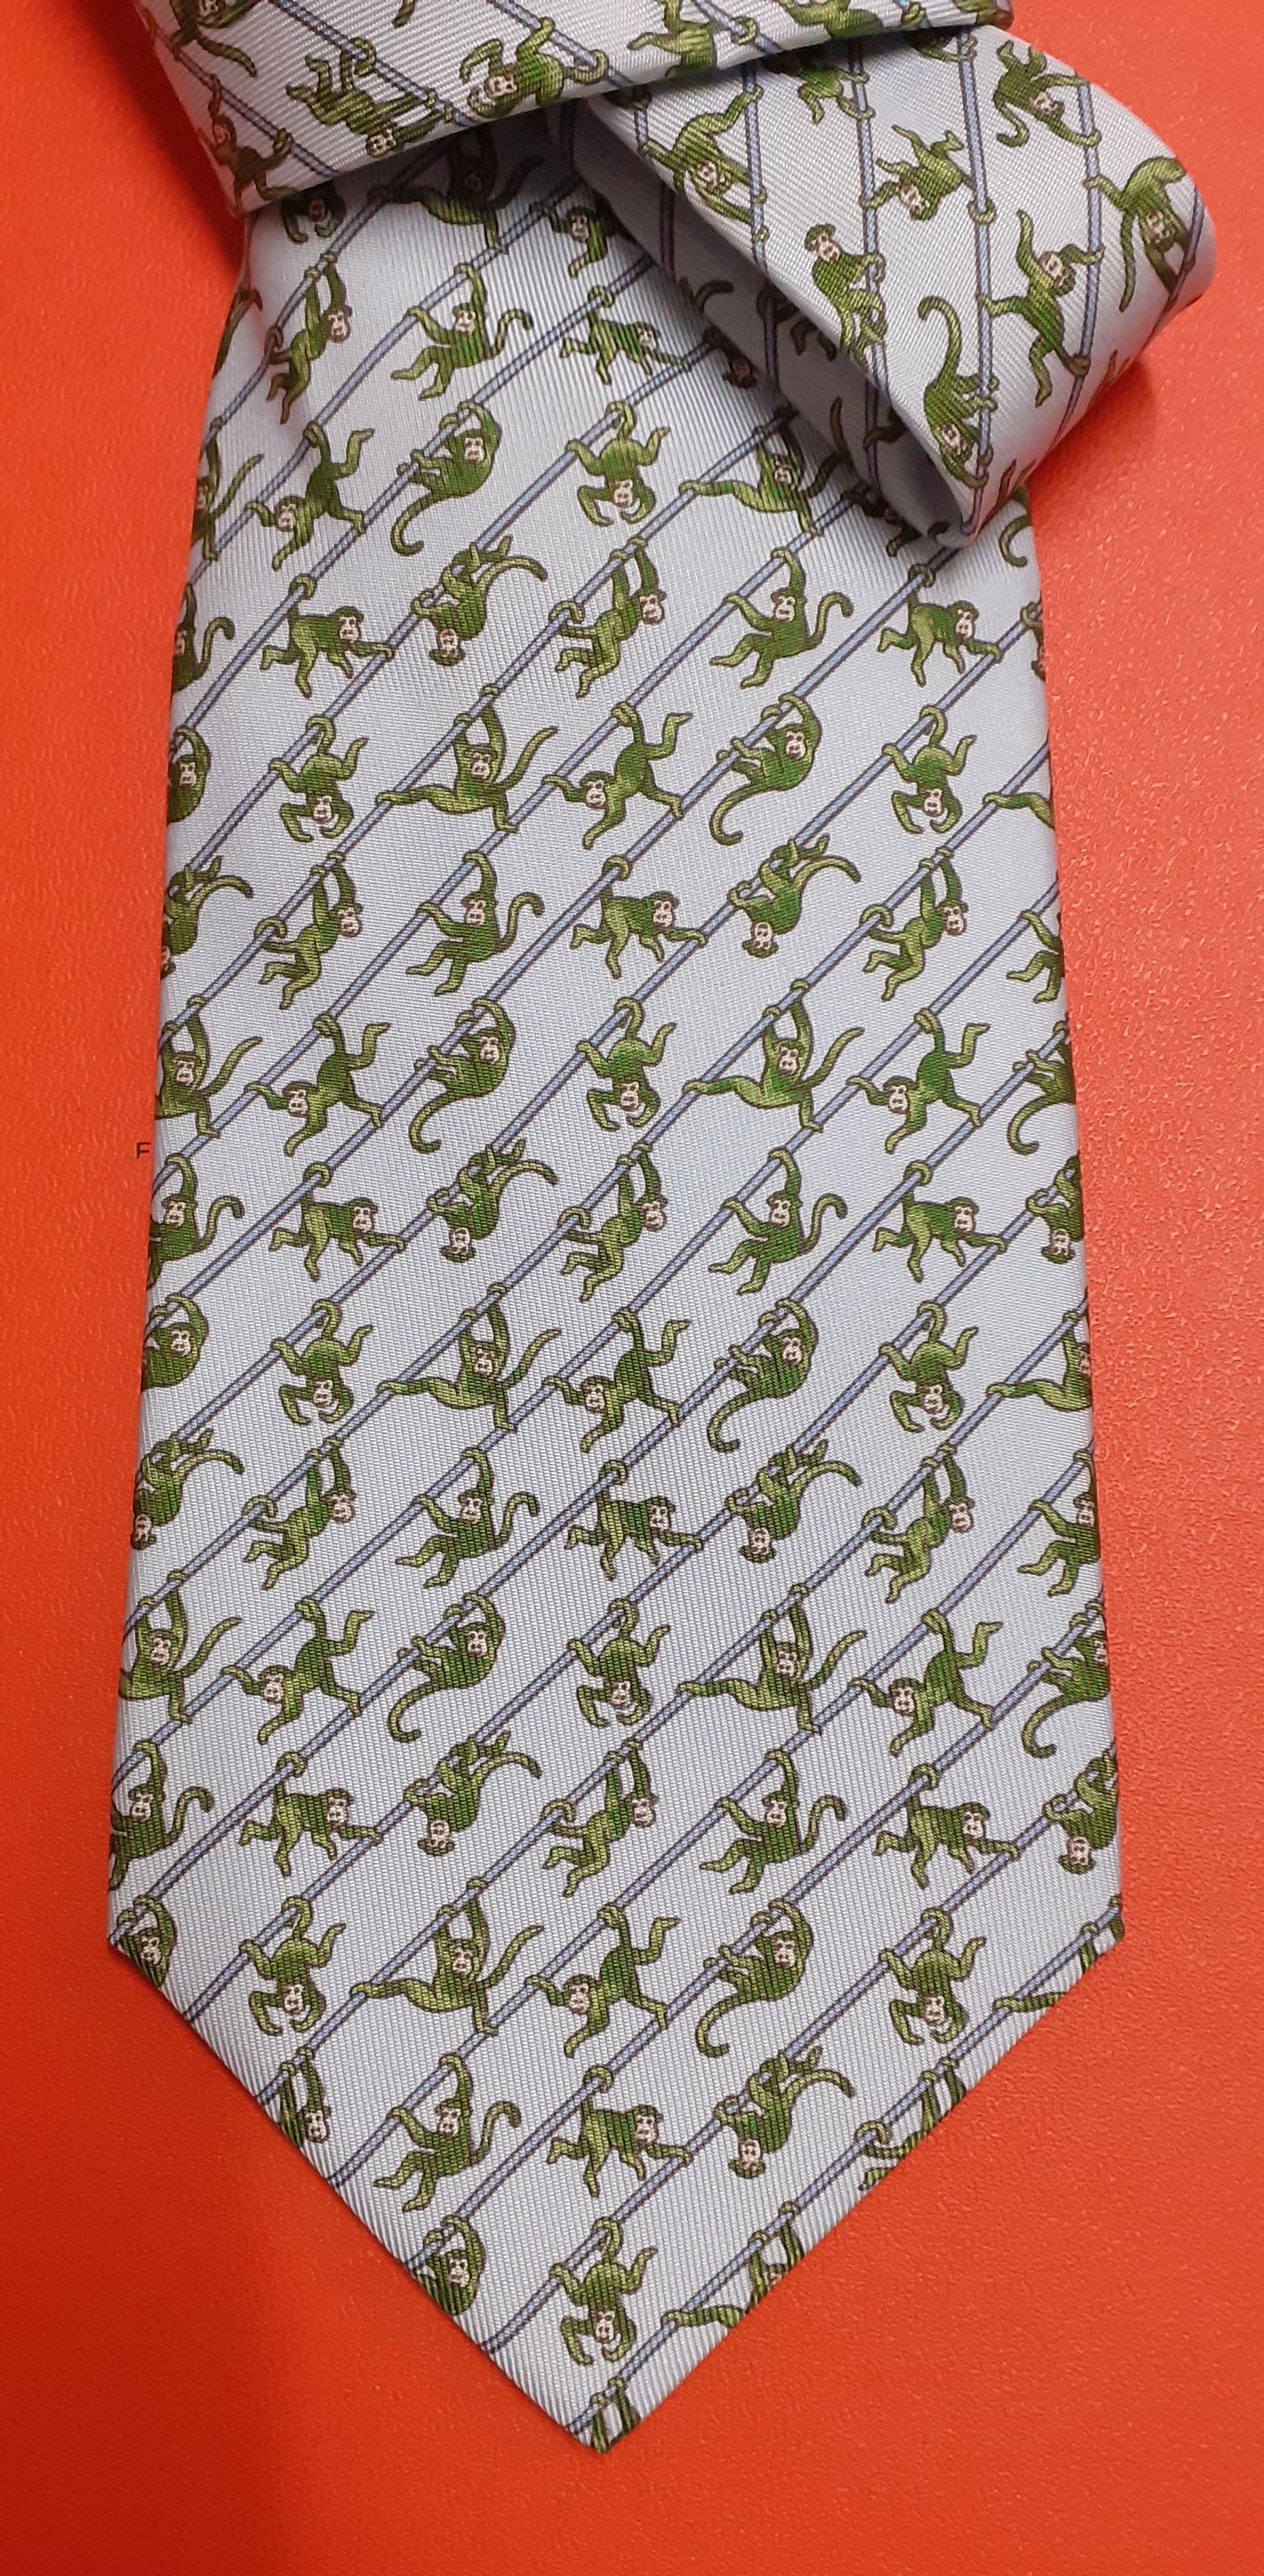 Bezaubernde und lustige echte Hermès Krawatte

Aus der Sammlung 